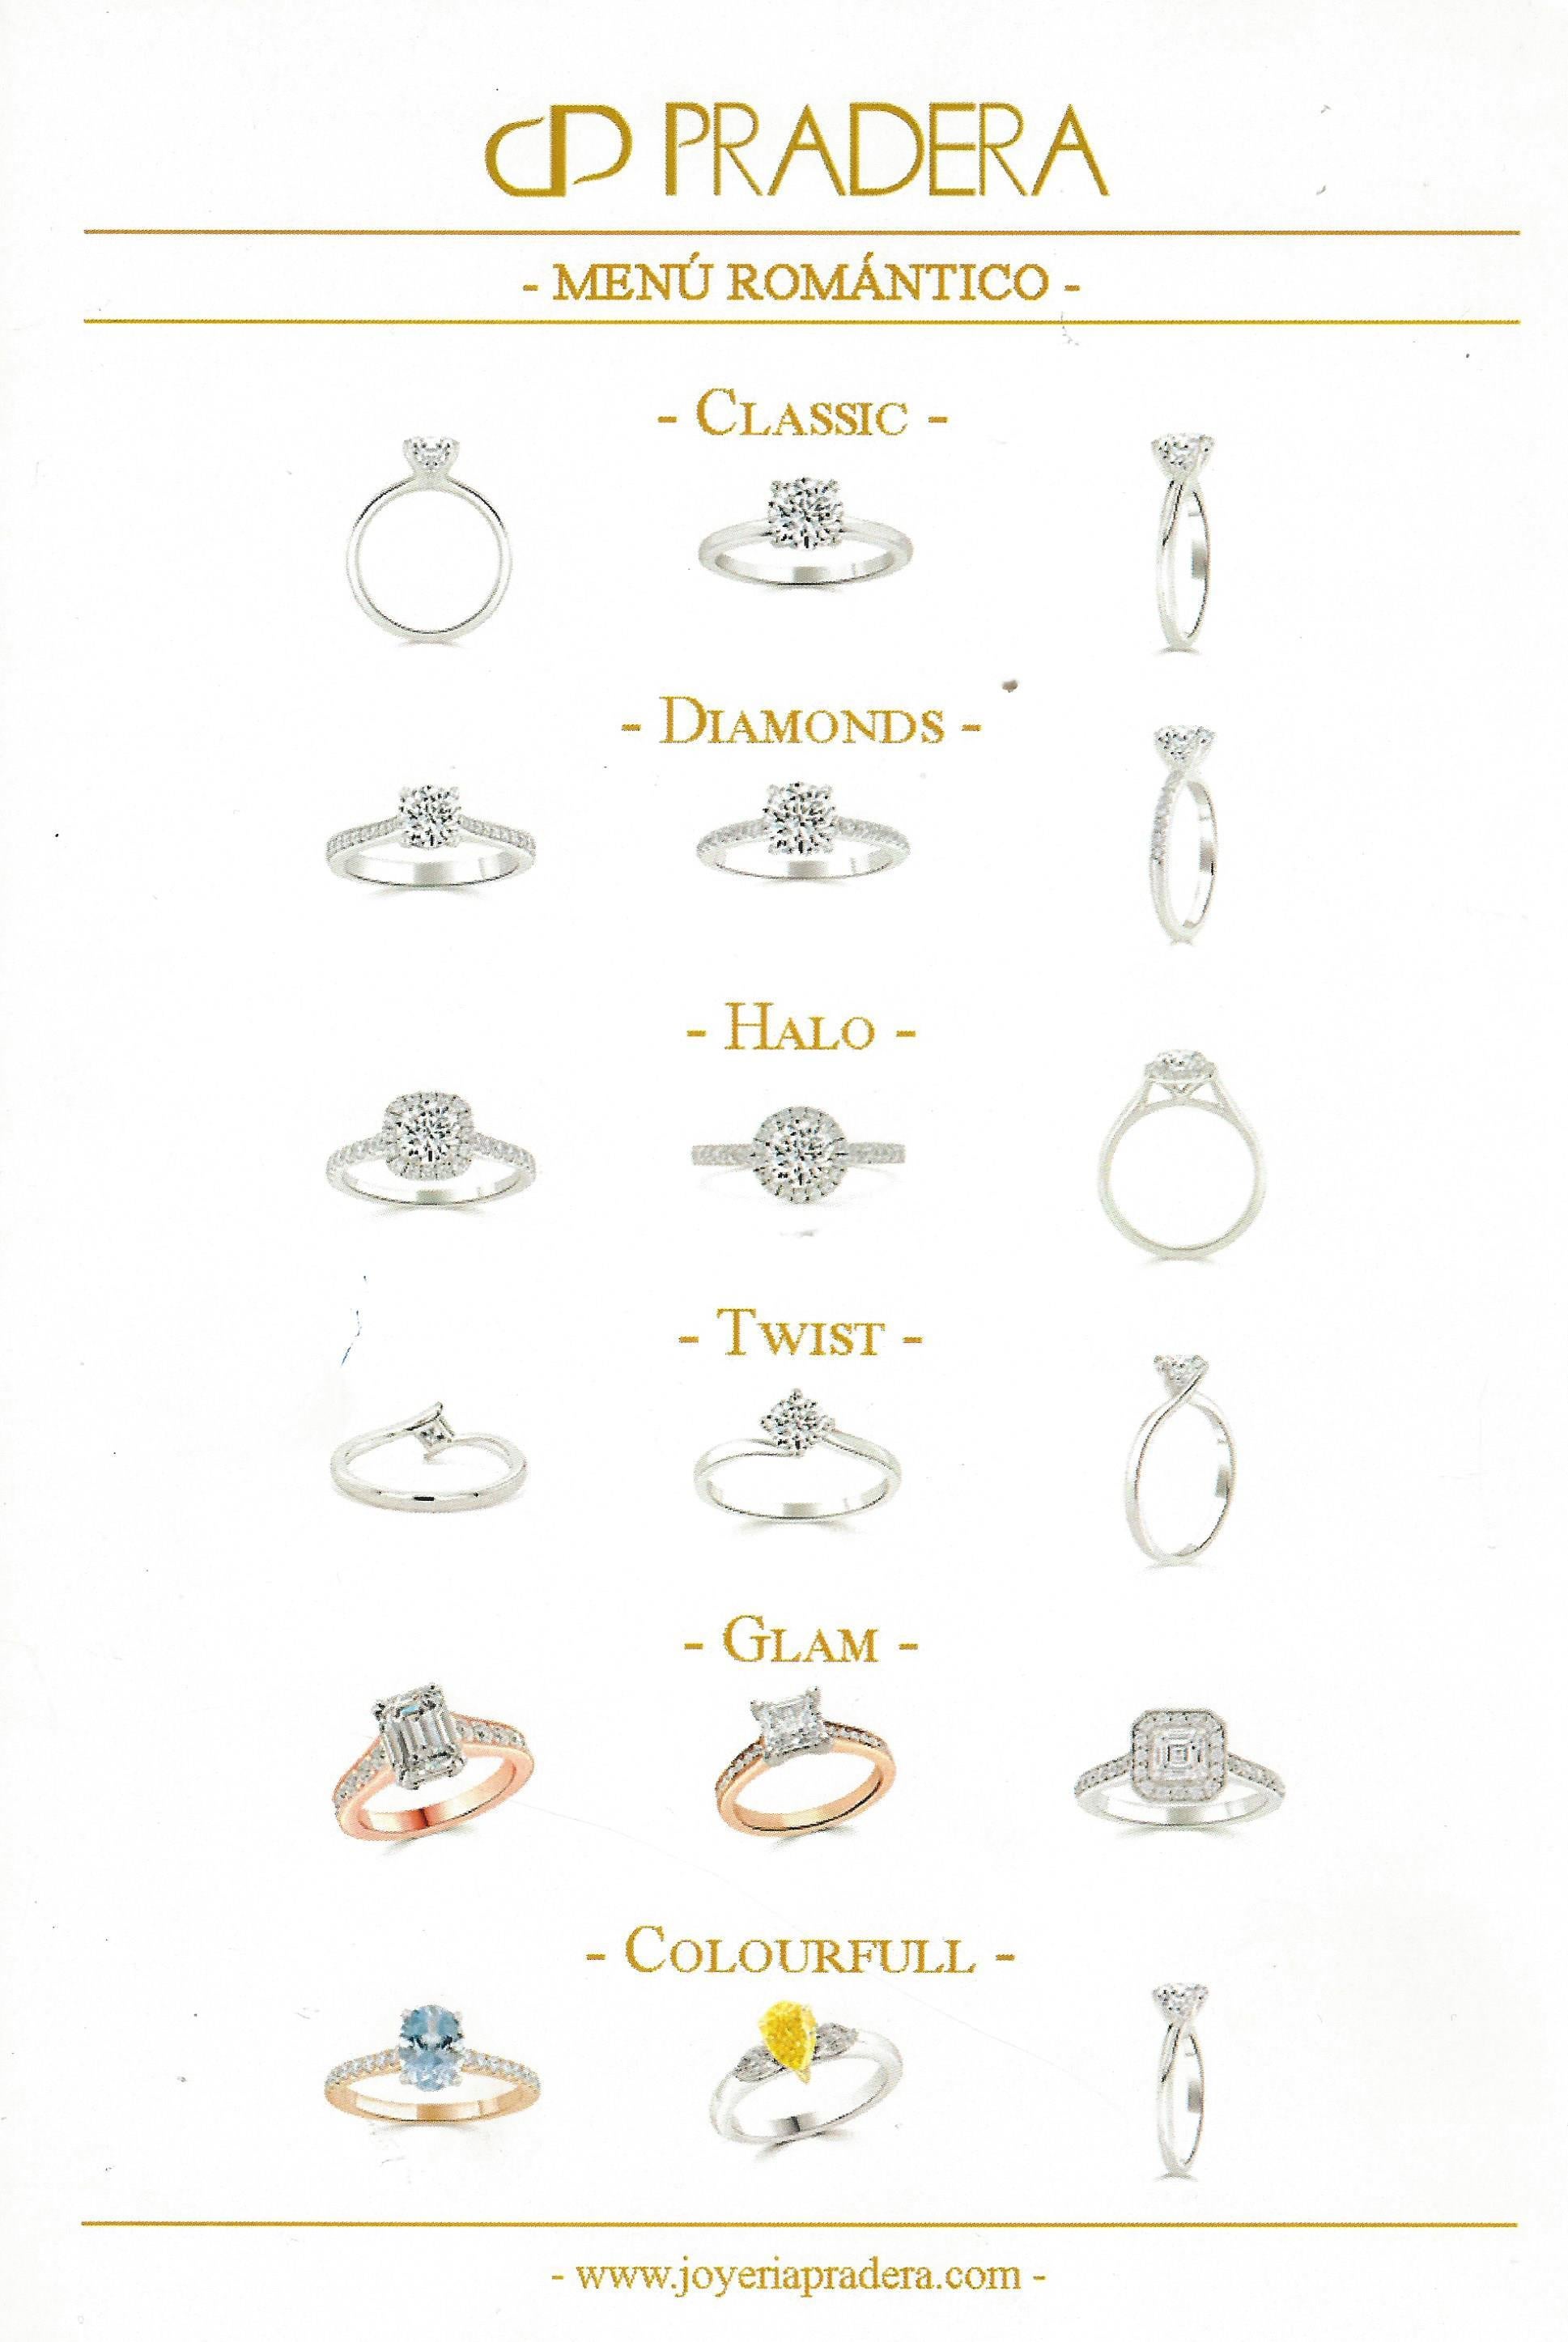 En vente :  Bague de fiançailles Pradera Magic en or blanc 18 carats avec diamants 6